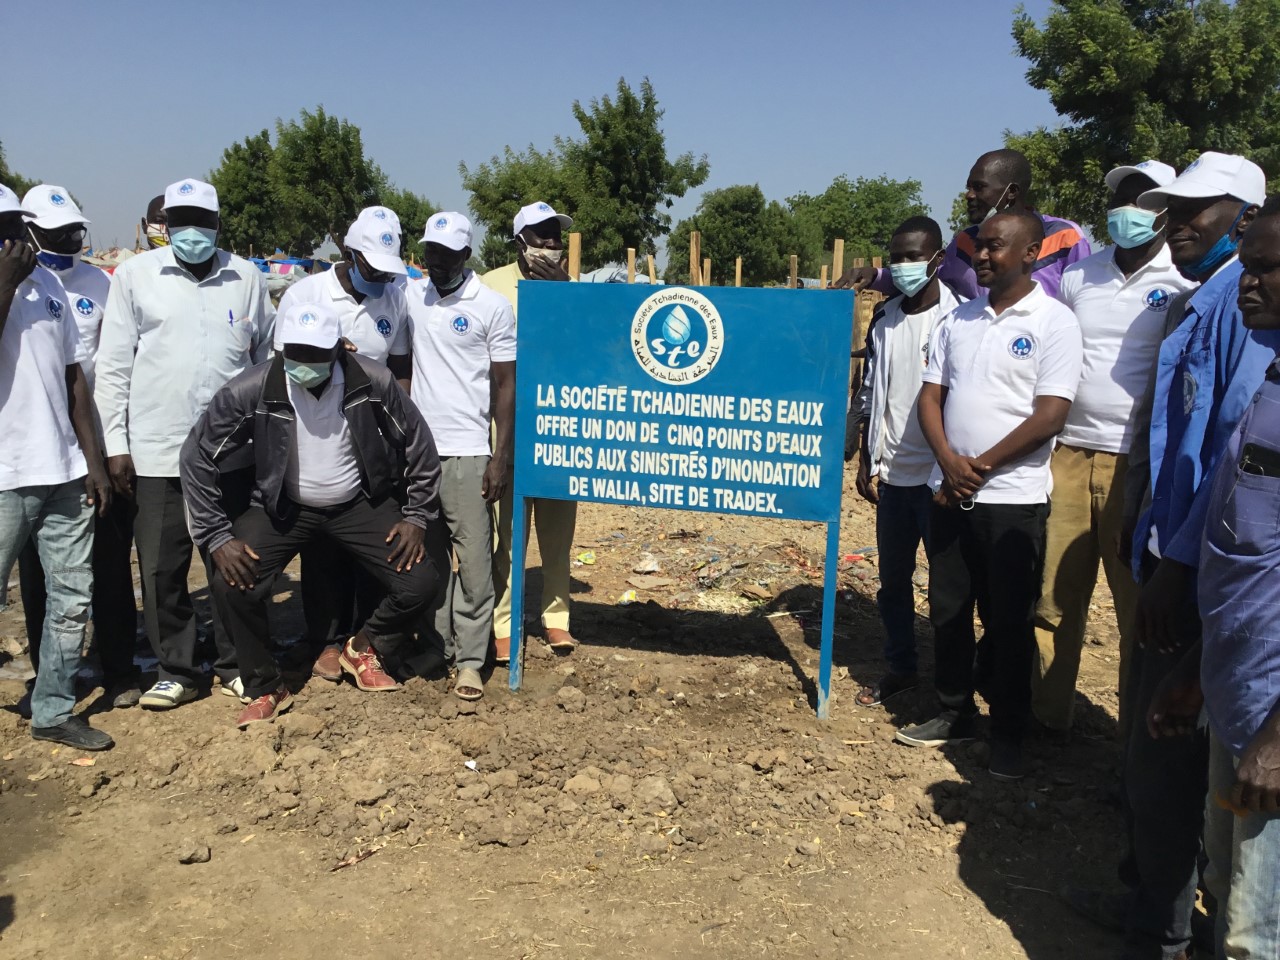 Tchad : la STE remet des dons de vivres et points d’eau aux sinistrés de Walia